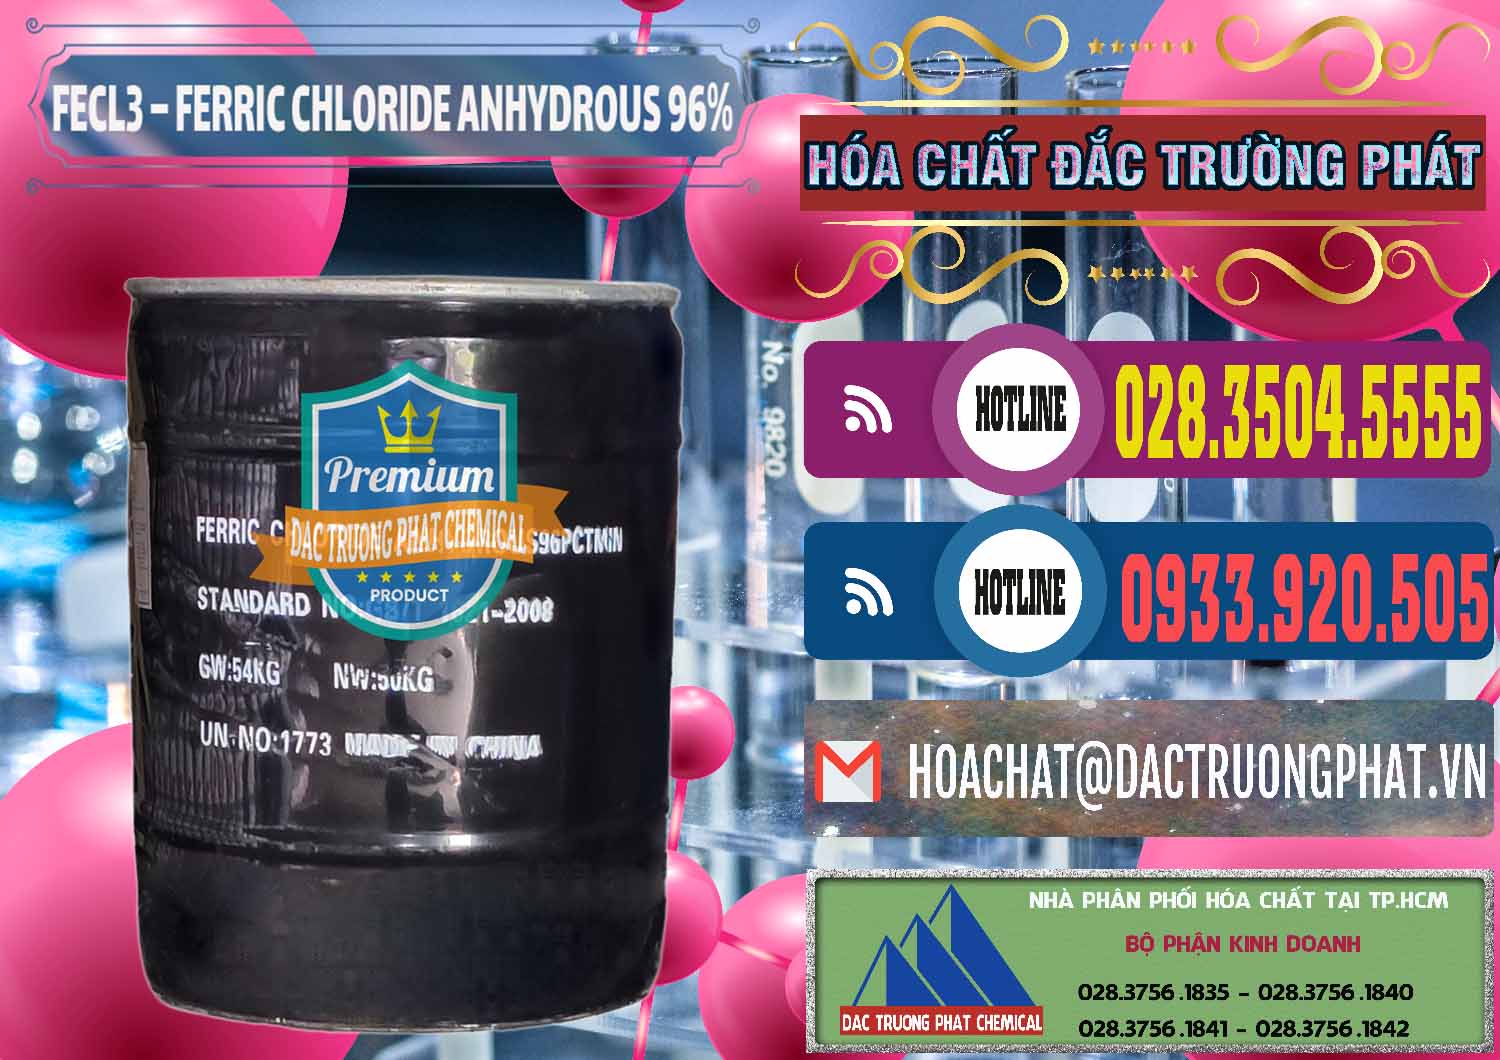 Công ty chuyên cung cấp _ bán FECL3 – Ferric Chloride Anhydrous 96% Trung Quốc China - 0065 - Cty cung ứng và phân phối hóa chất tại TP.HCM - muabanhoachat.com.vn